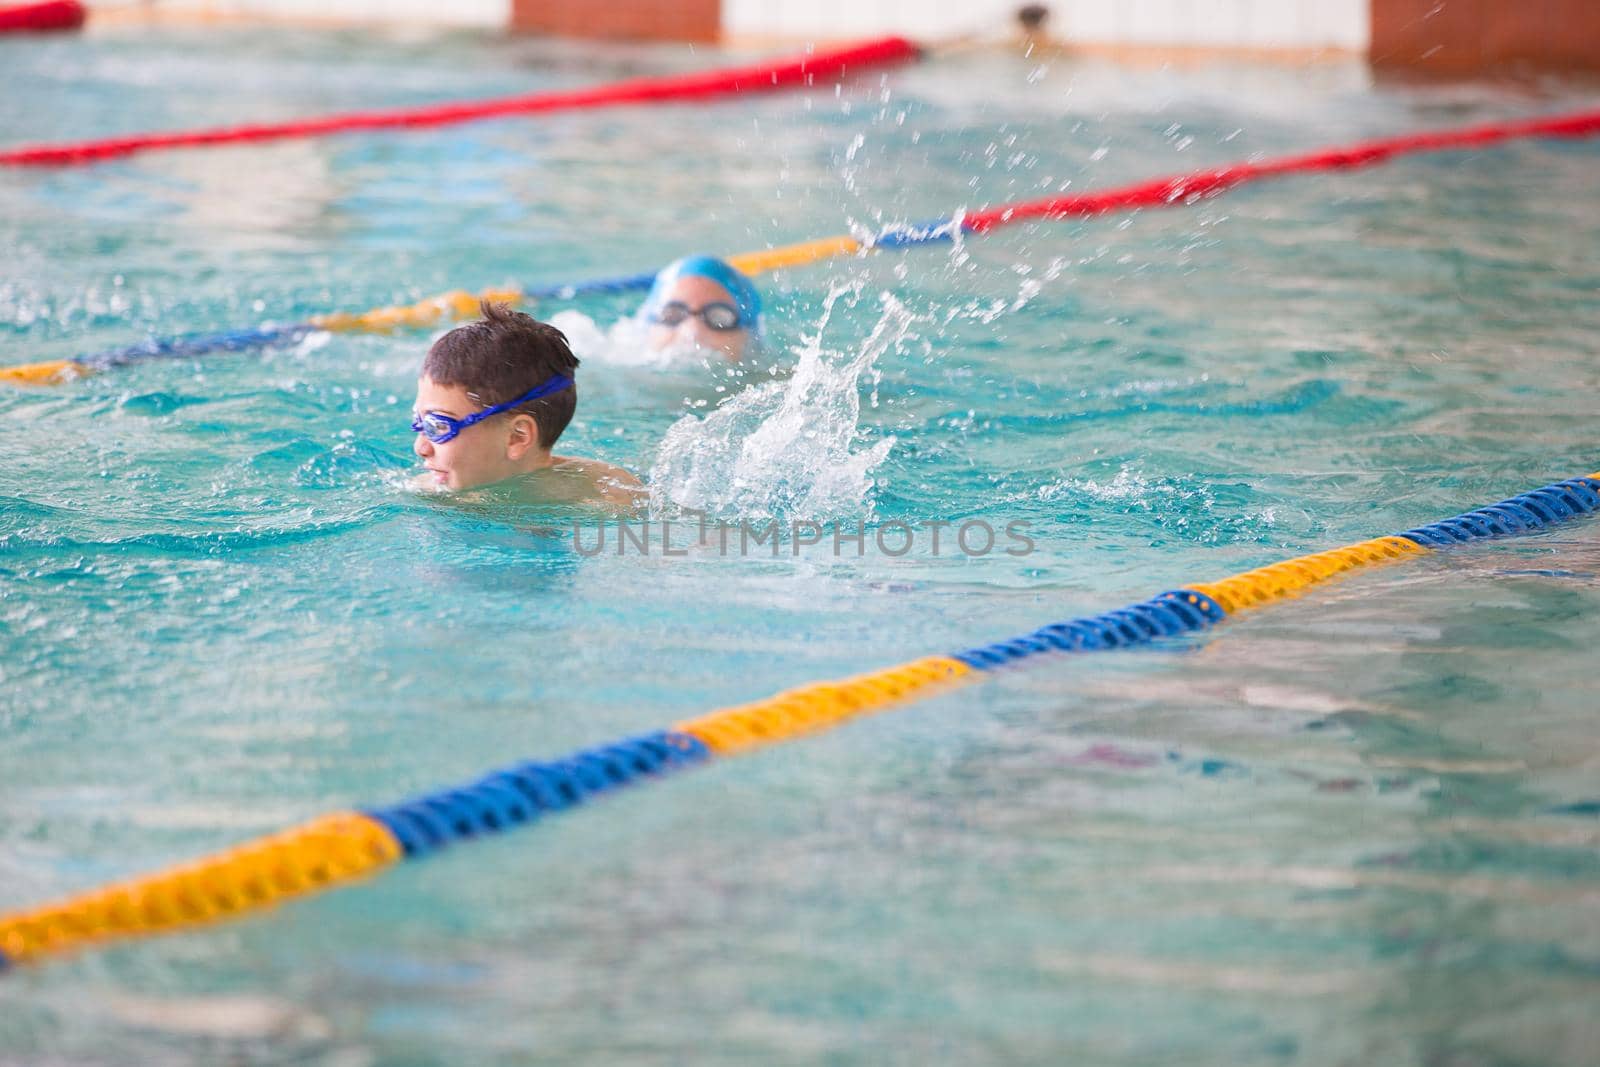 Children's swim training by Sviatlana